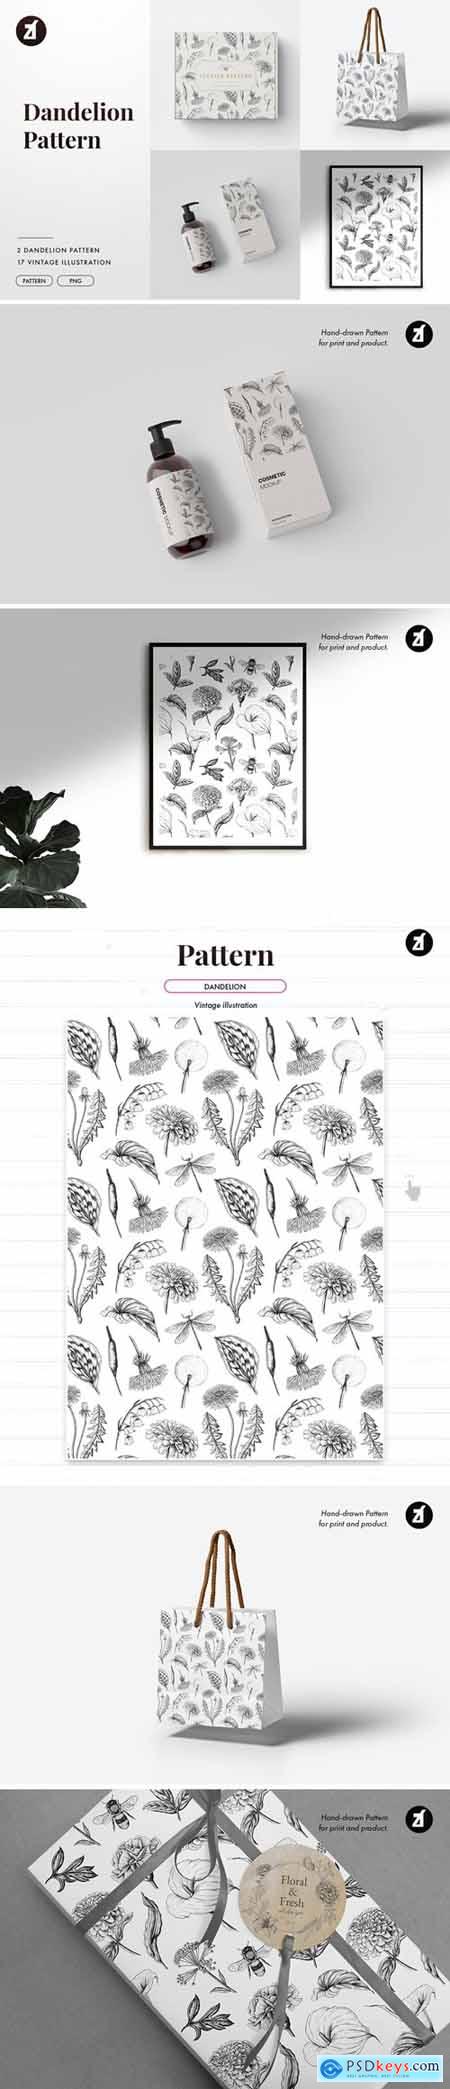 Dandelion vintage illustration and pattern